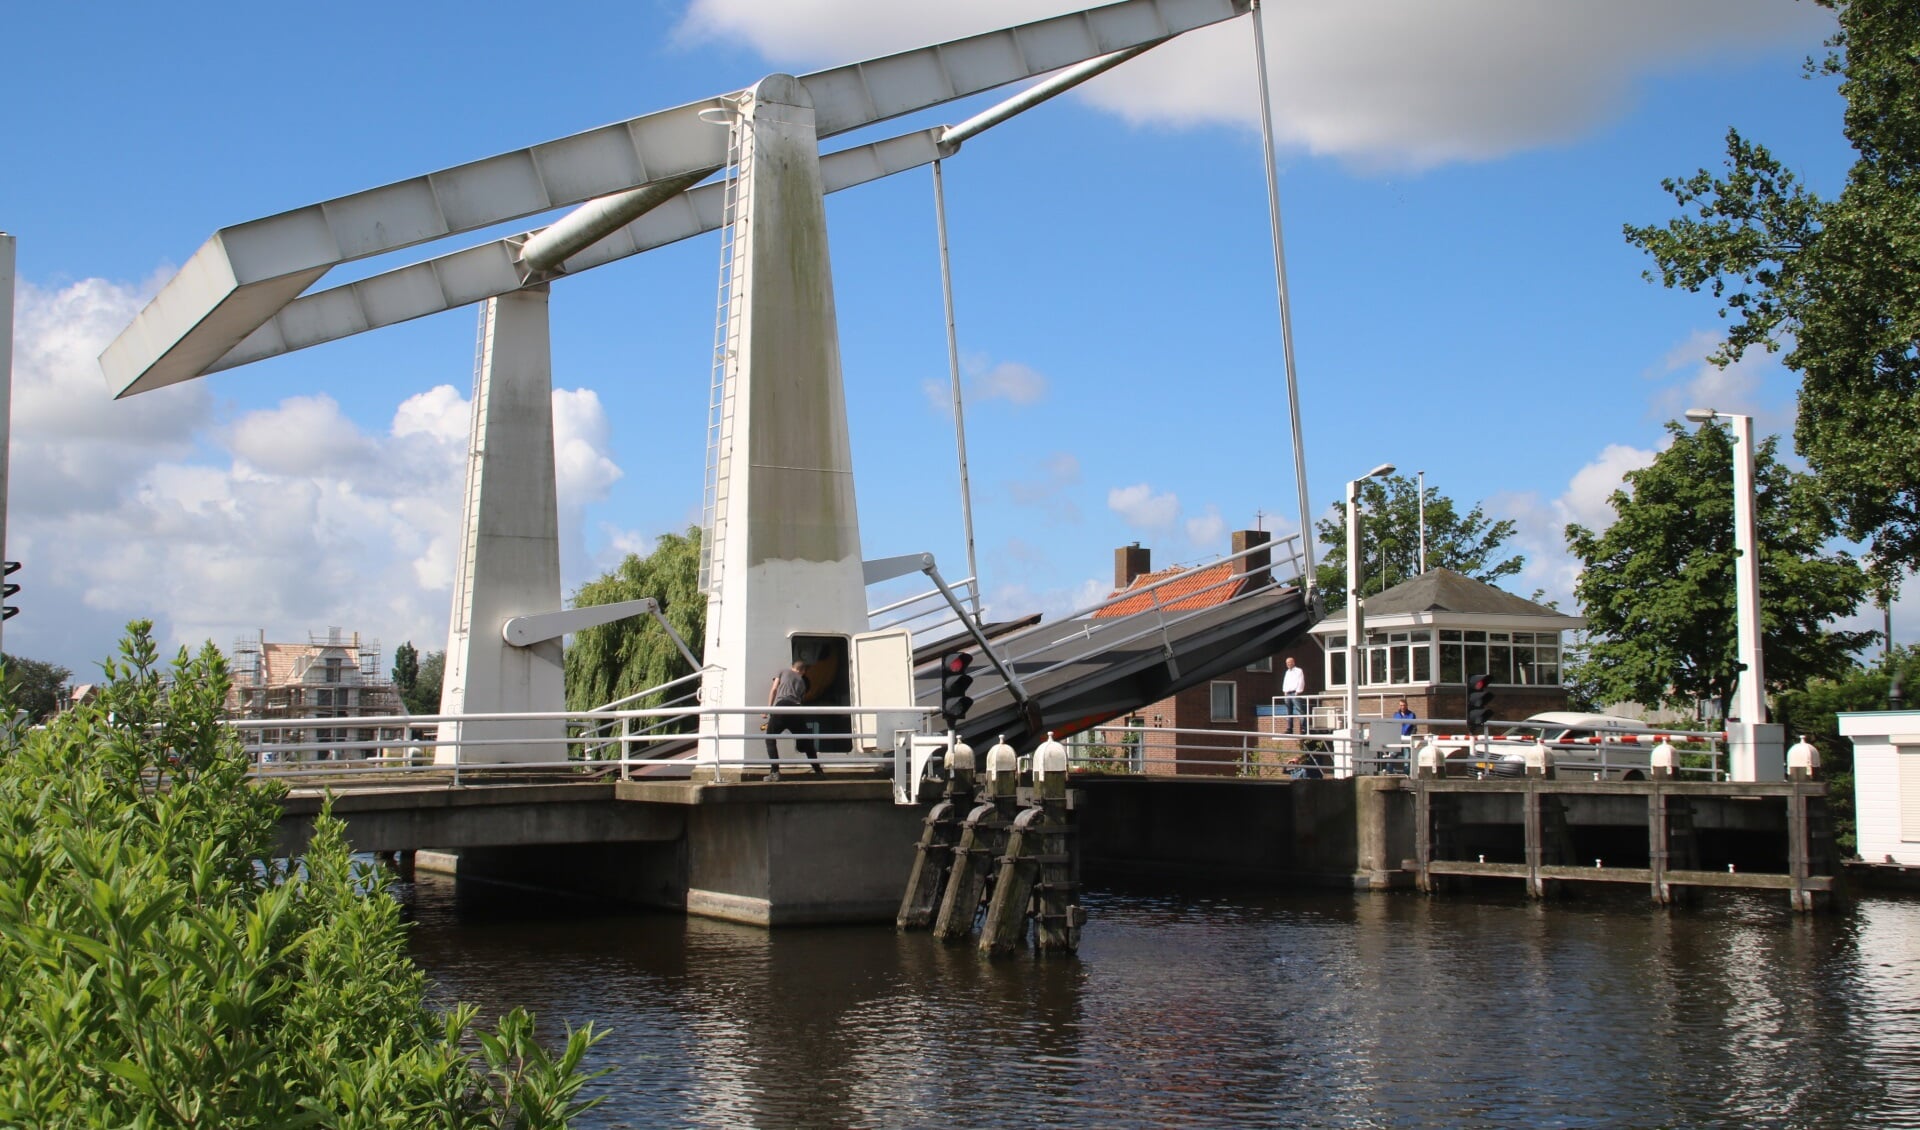 De haven van de Watersportvereniging Lisse wordt veel gebruikt door boten die de staandemastenroute varen. Daar maakt de Ringvaart van de Haarlemmermeer deel van uit.